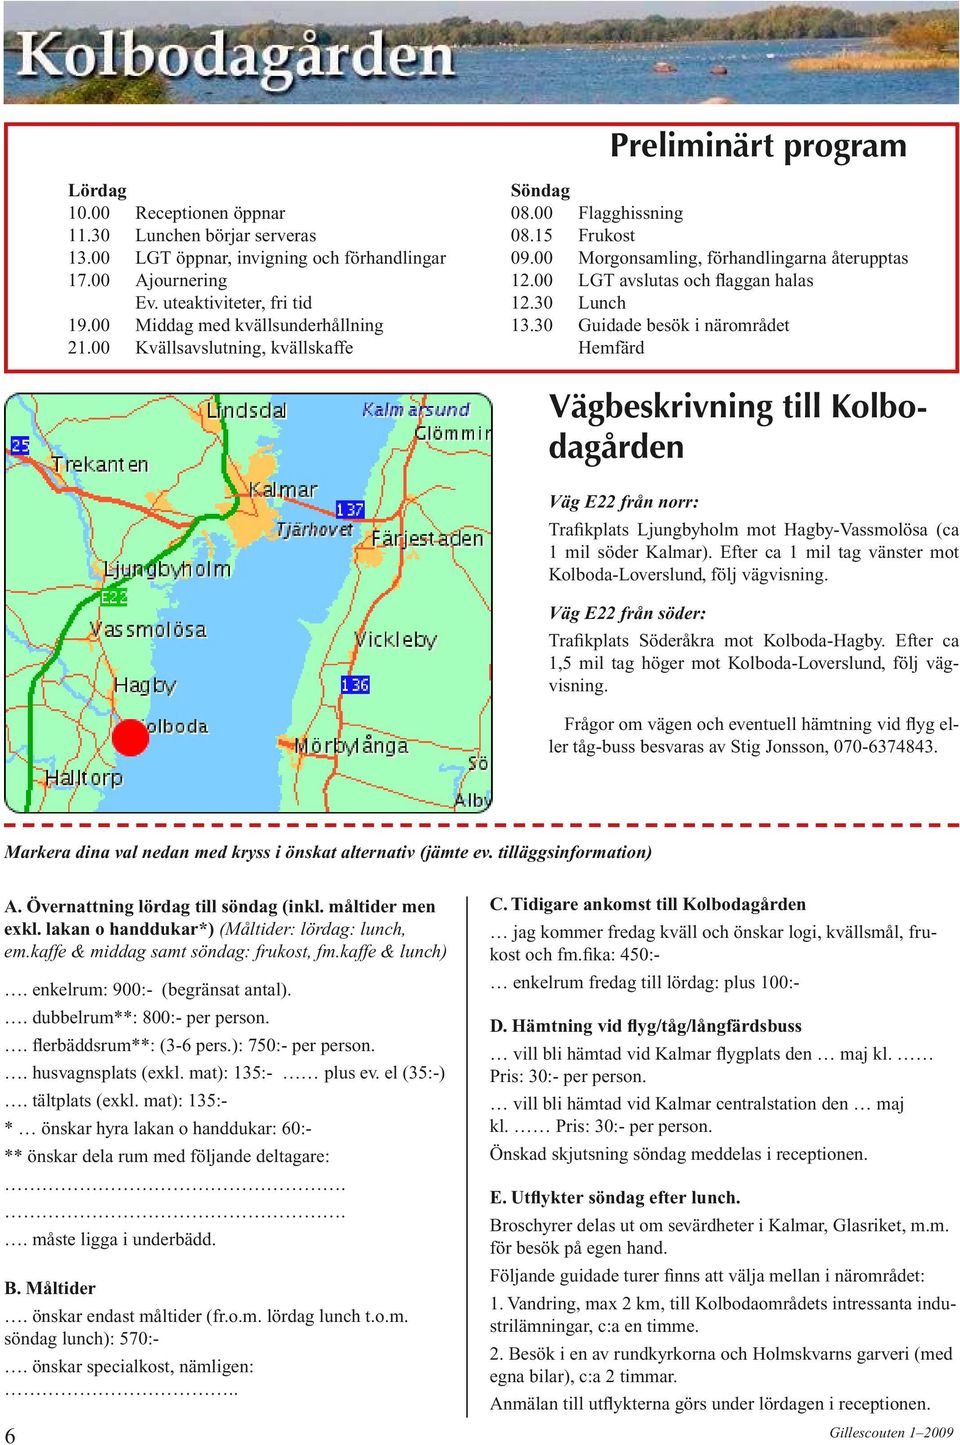 30 Lunch 13.30 Guidade besök i närområdet Hemfärd Vägbeskrivning till Kolbodagården Väg E22 från norr: Trafikplats Ljungbyholm mot Hagby-Vassmolösa (ca 1 mil söder Kalmar).